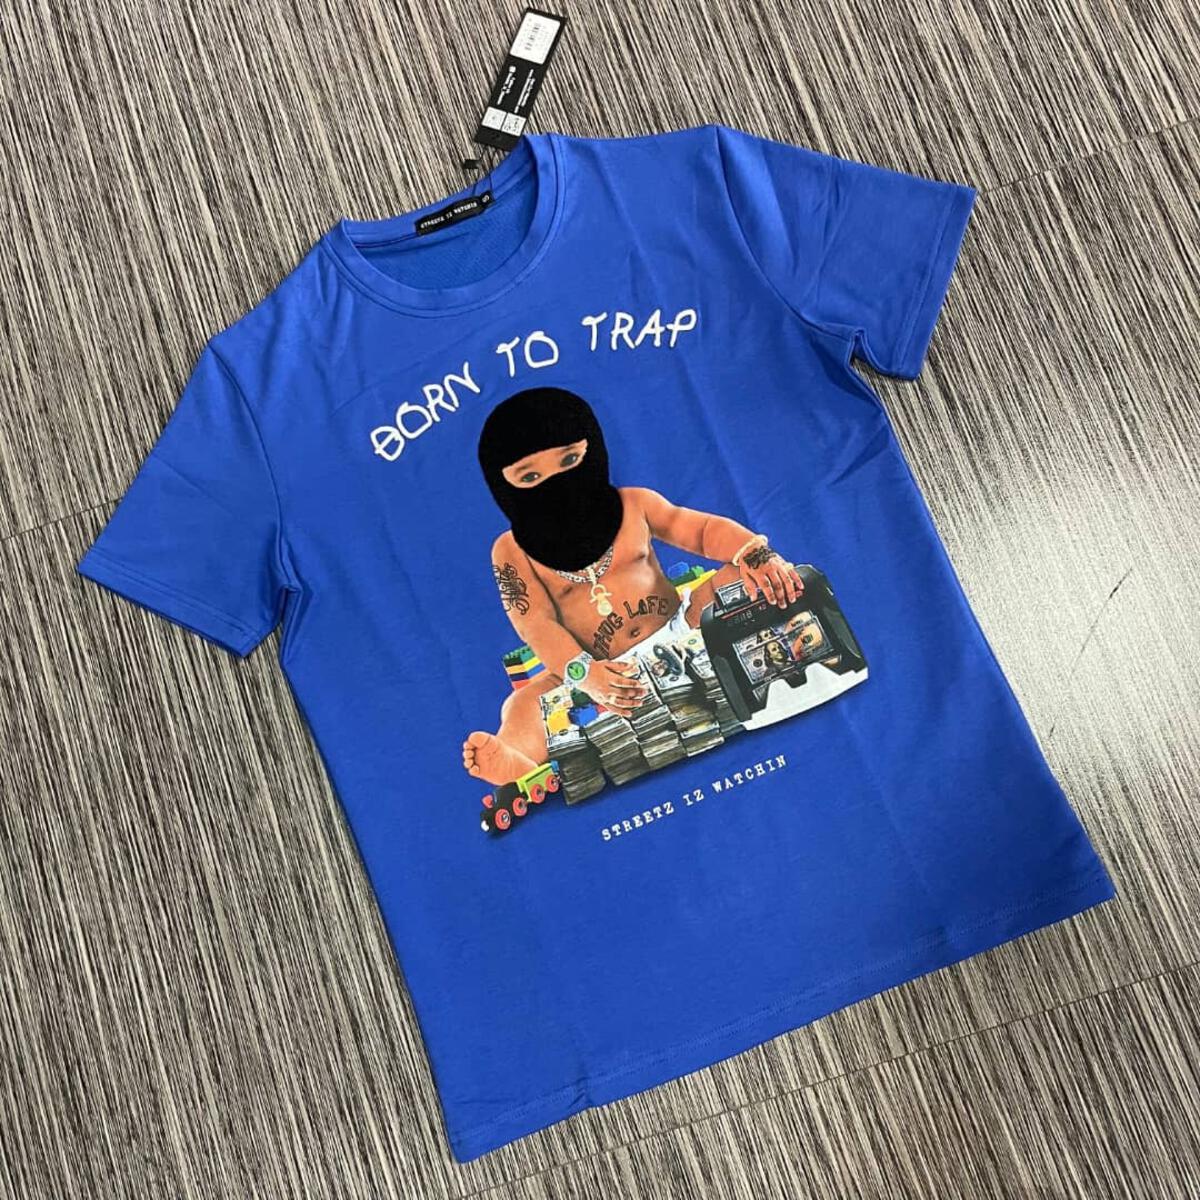 Streetz Iz Watchin - Trap Baby 2 T-Shirt – Shop VIP Wear